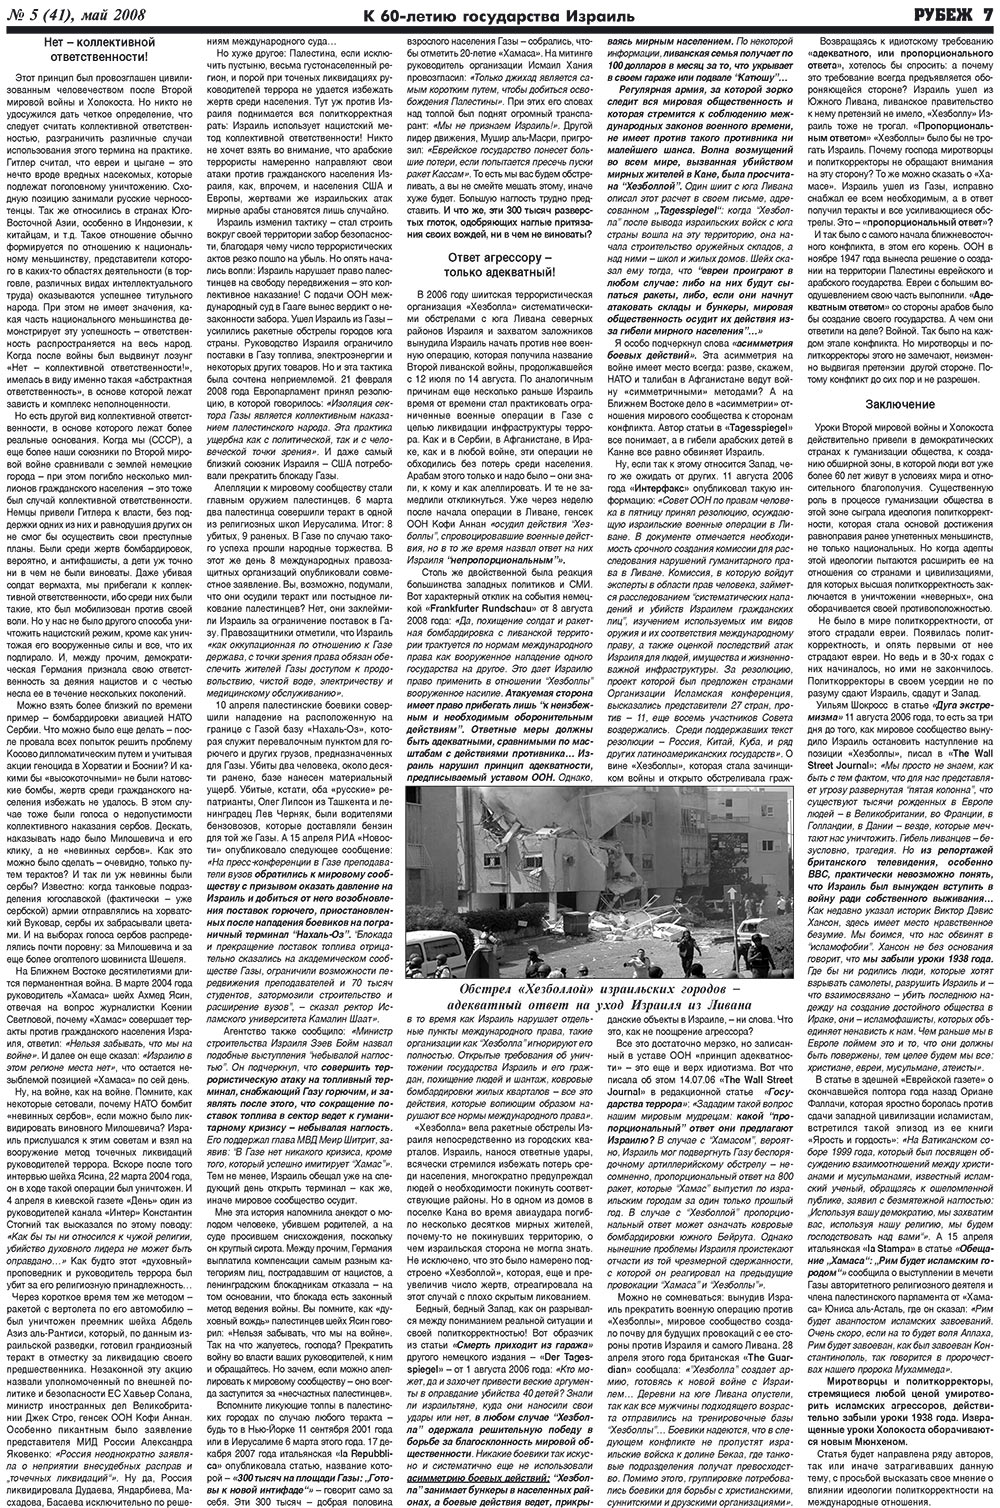 Рубеж (газета). 2008 год, номер 5, стр. 7